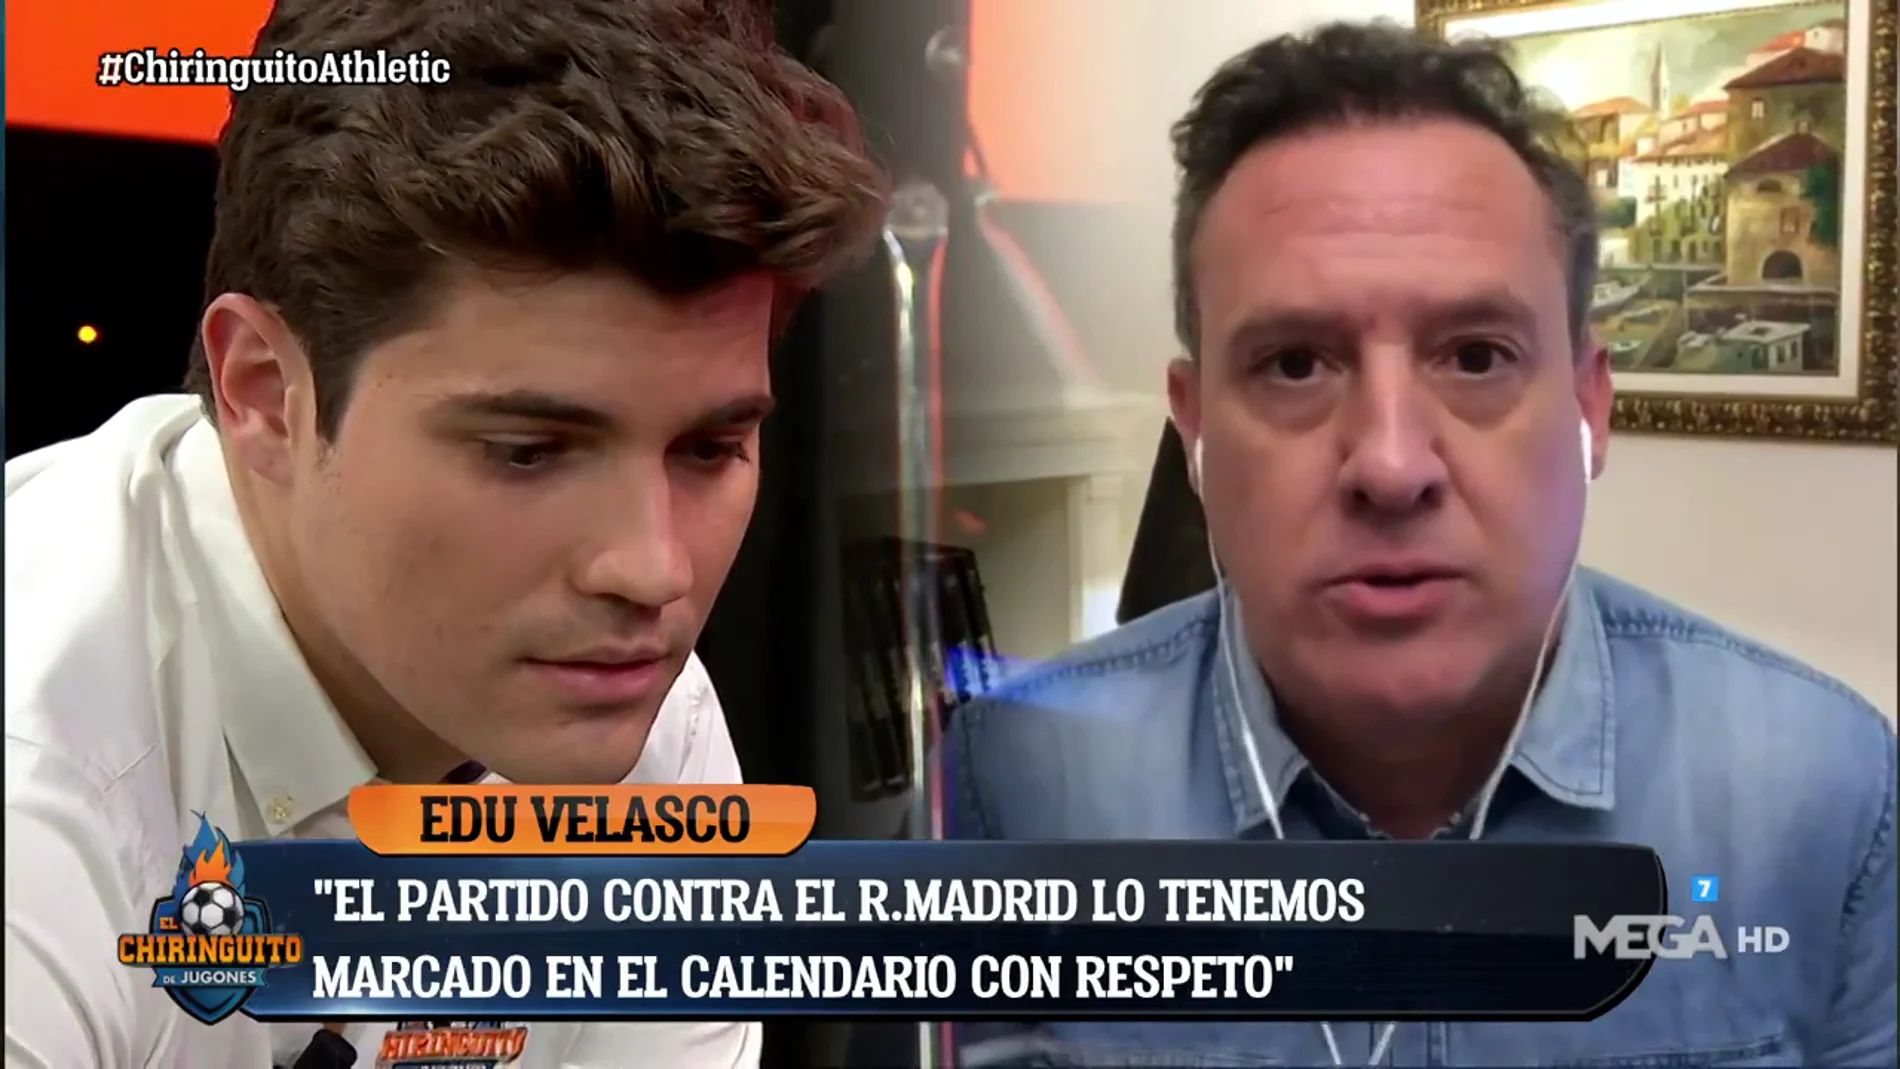 Edu Velasco: "El Chiringuito respeta al Athletic"